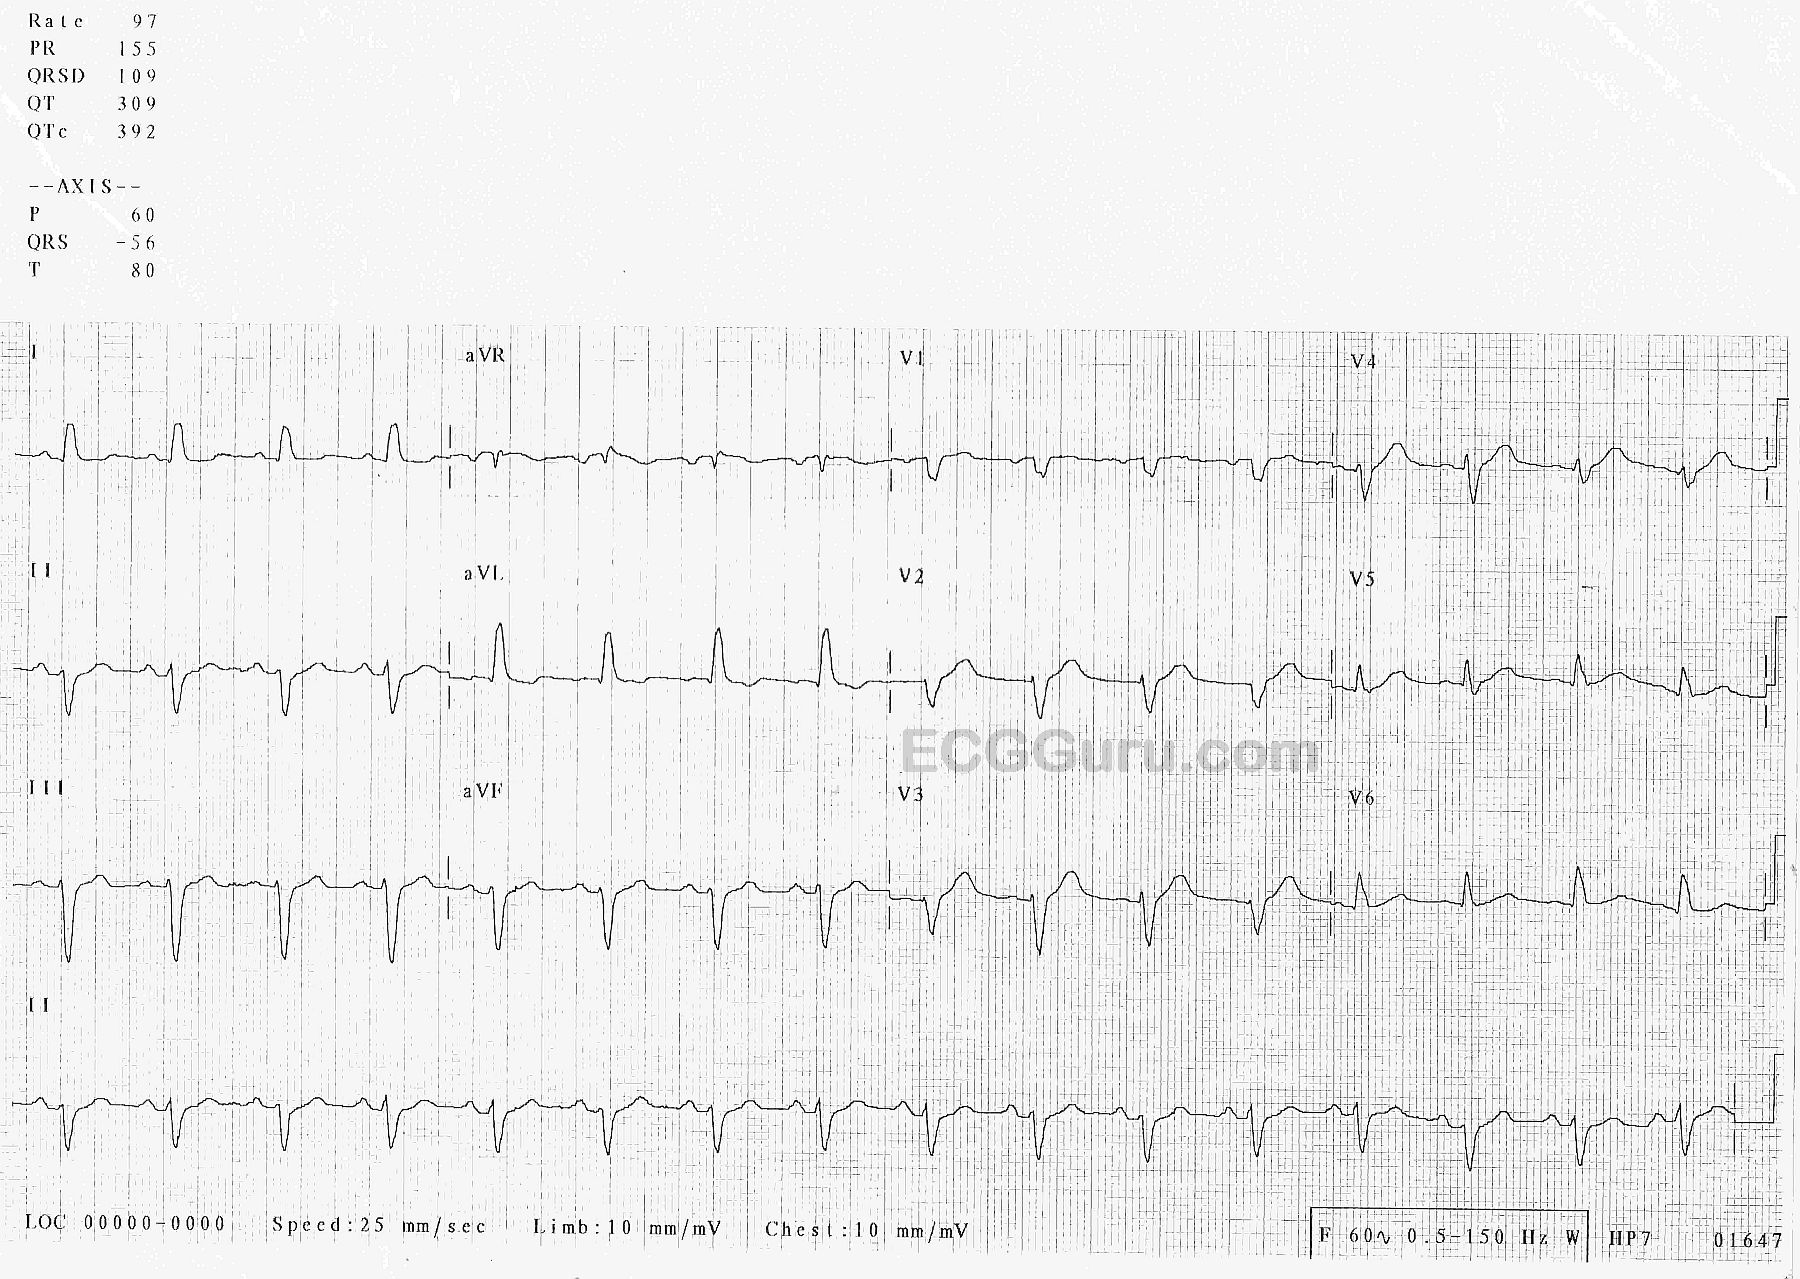 Nonspecific intraventricular conduction delay (defect) – ECG & ECHO